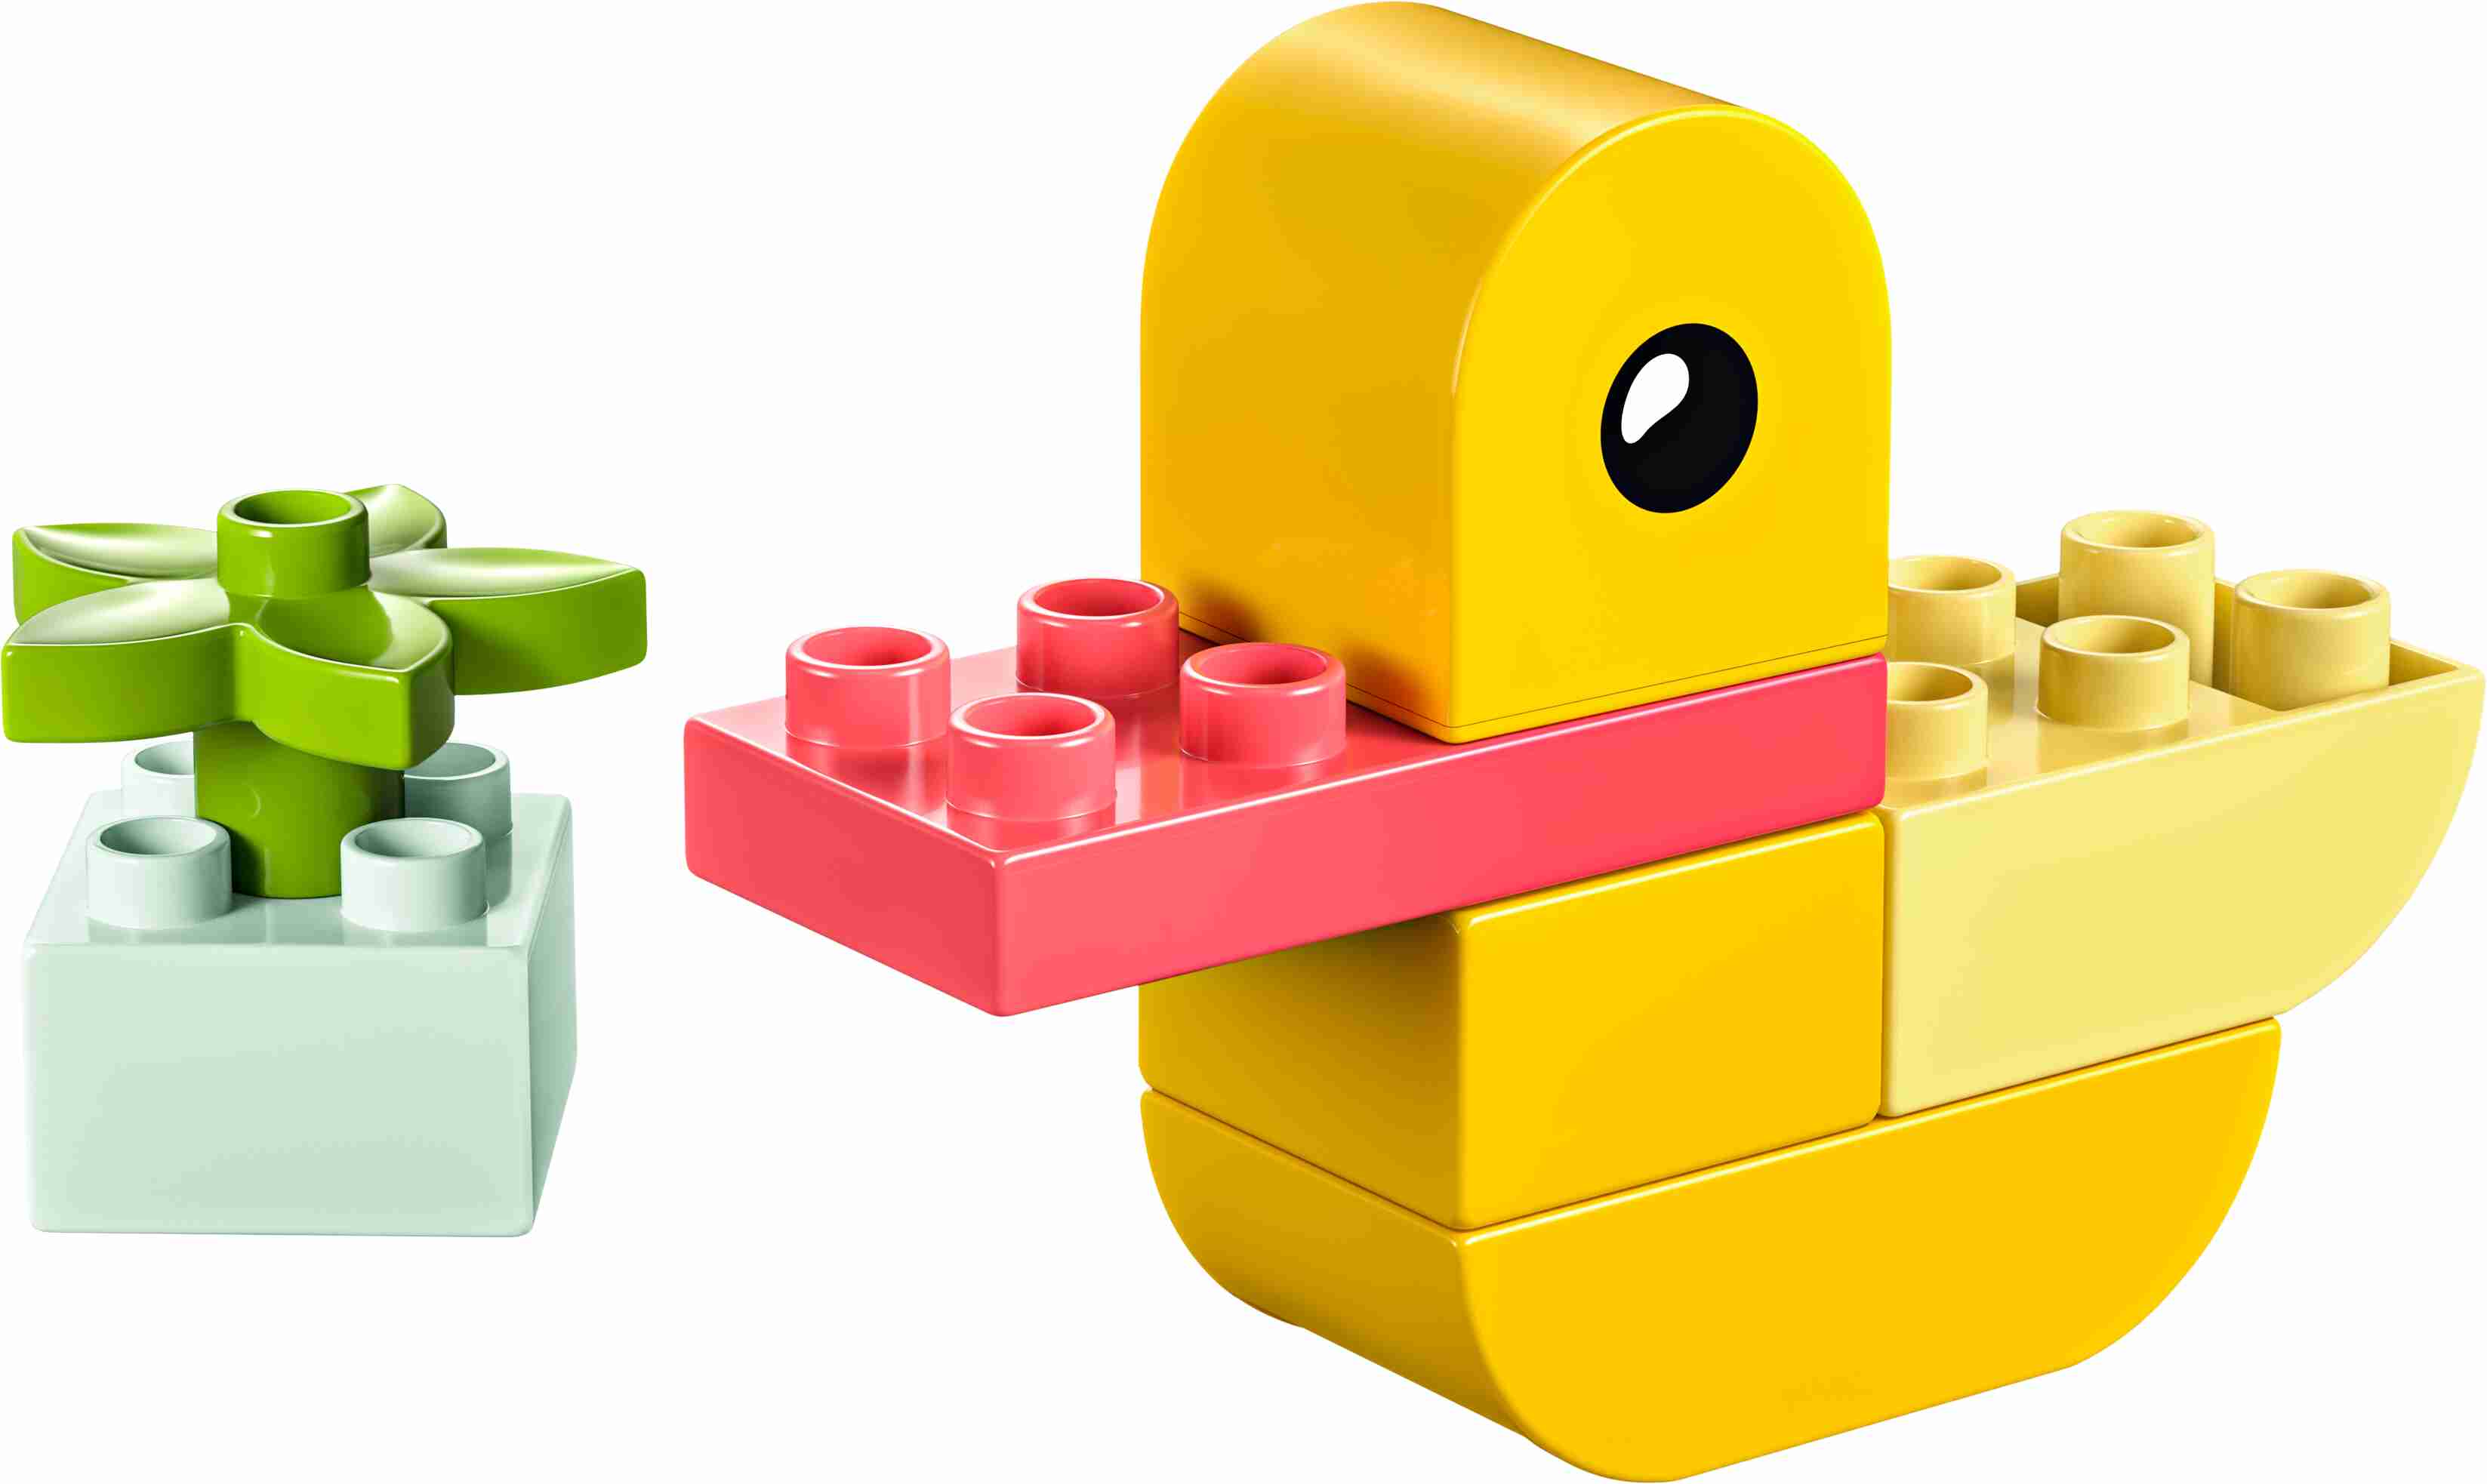 LEGO 30673 DUPLO Meine erste Ente